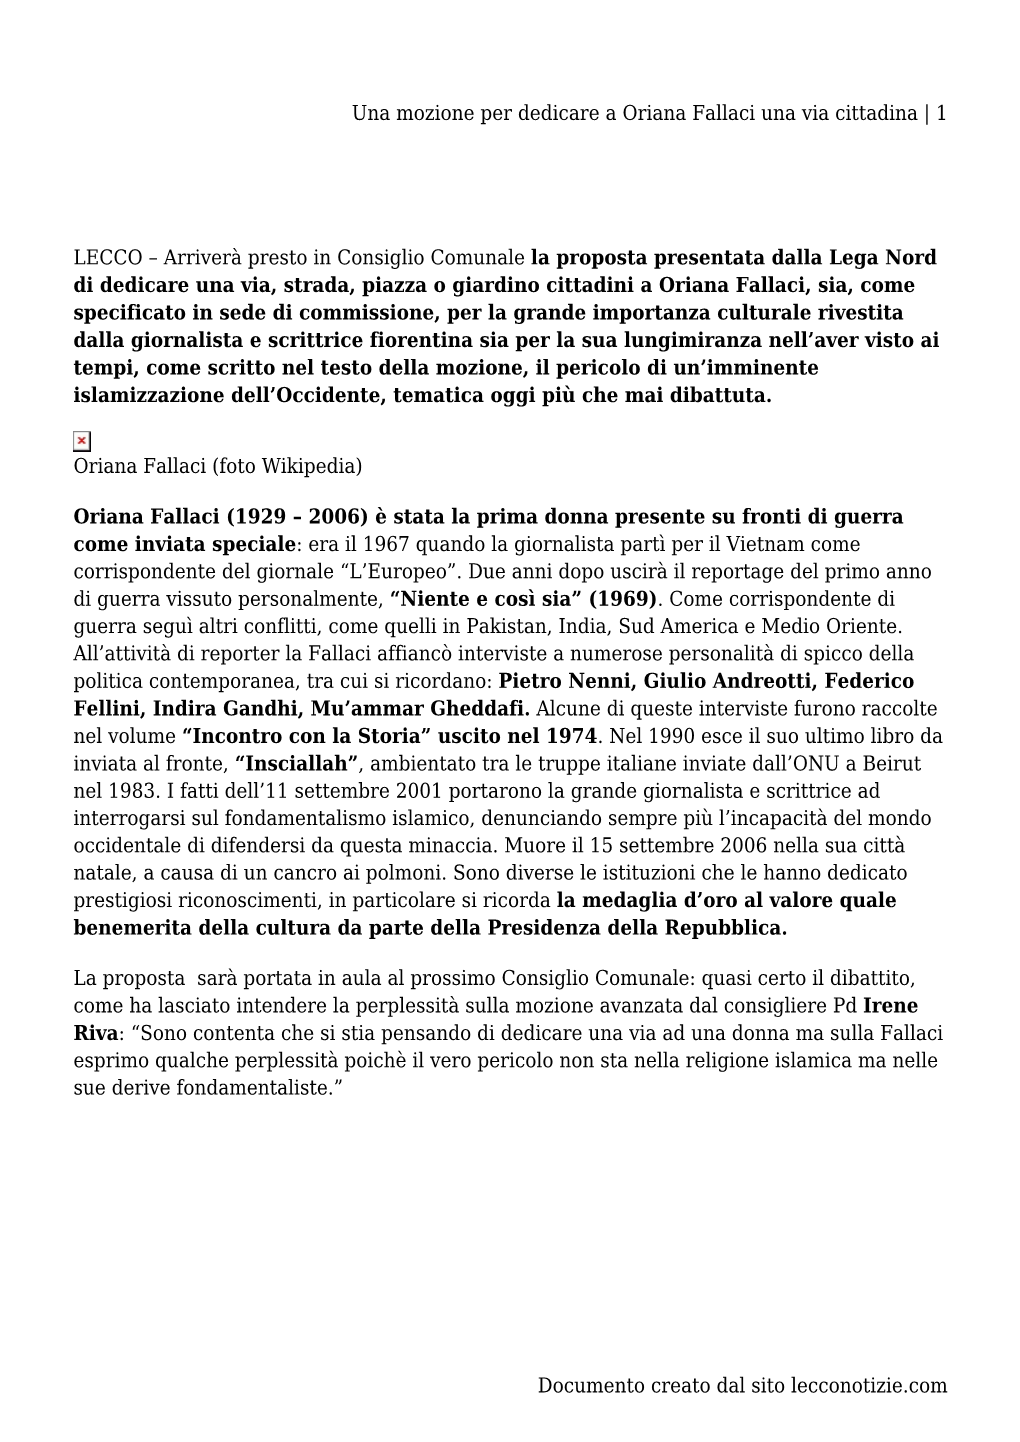 Una Mozione Per Dedicare a Oriana Fallaci Una Via Cittadina | 1